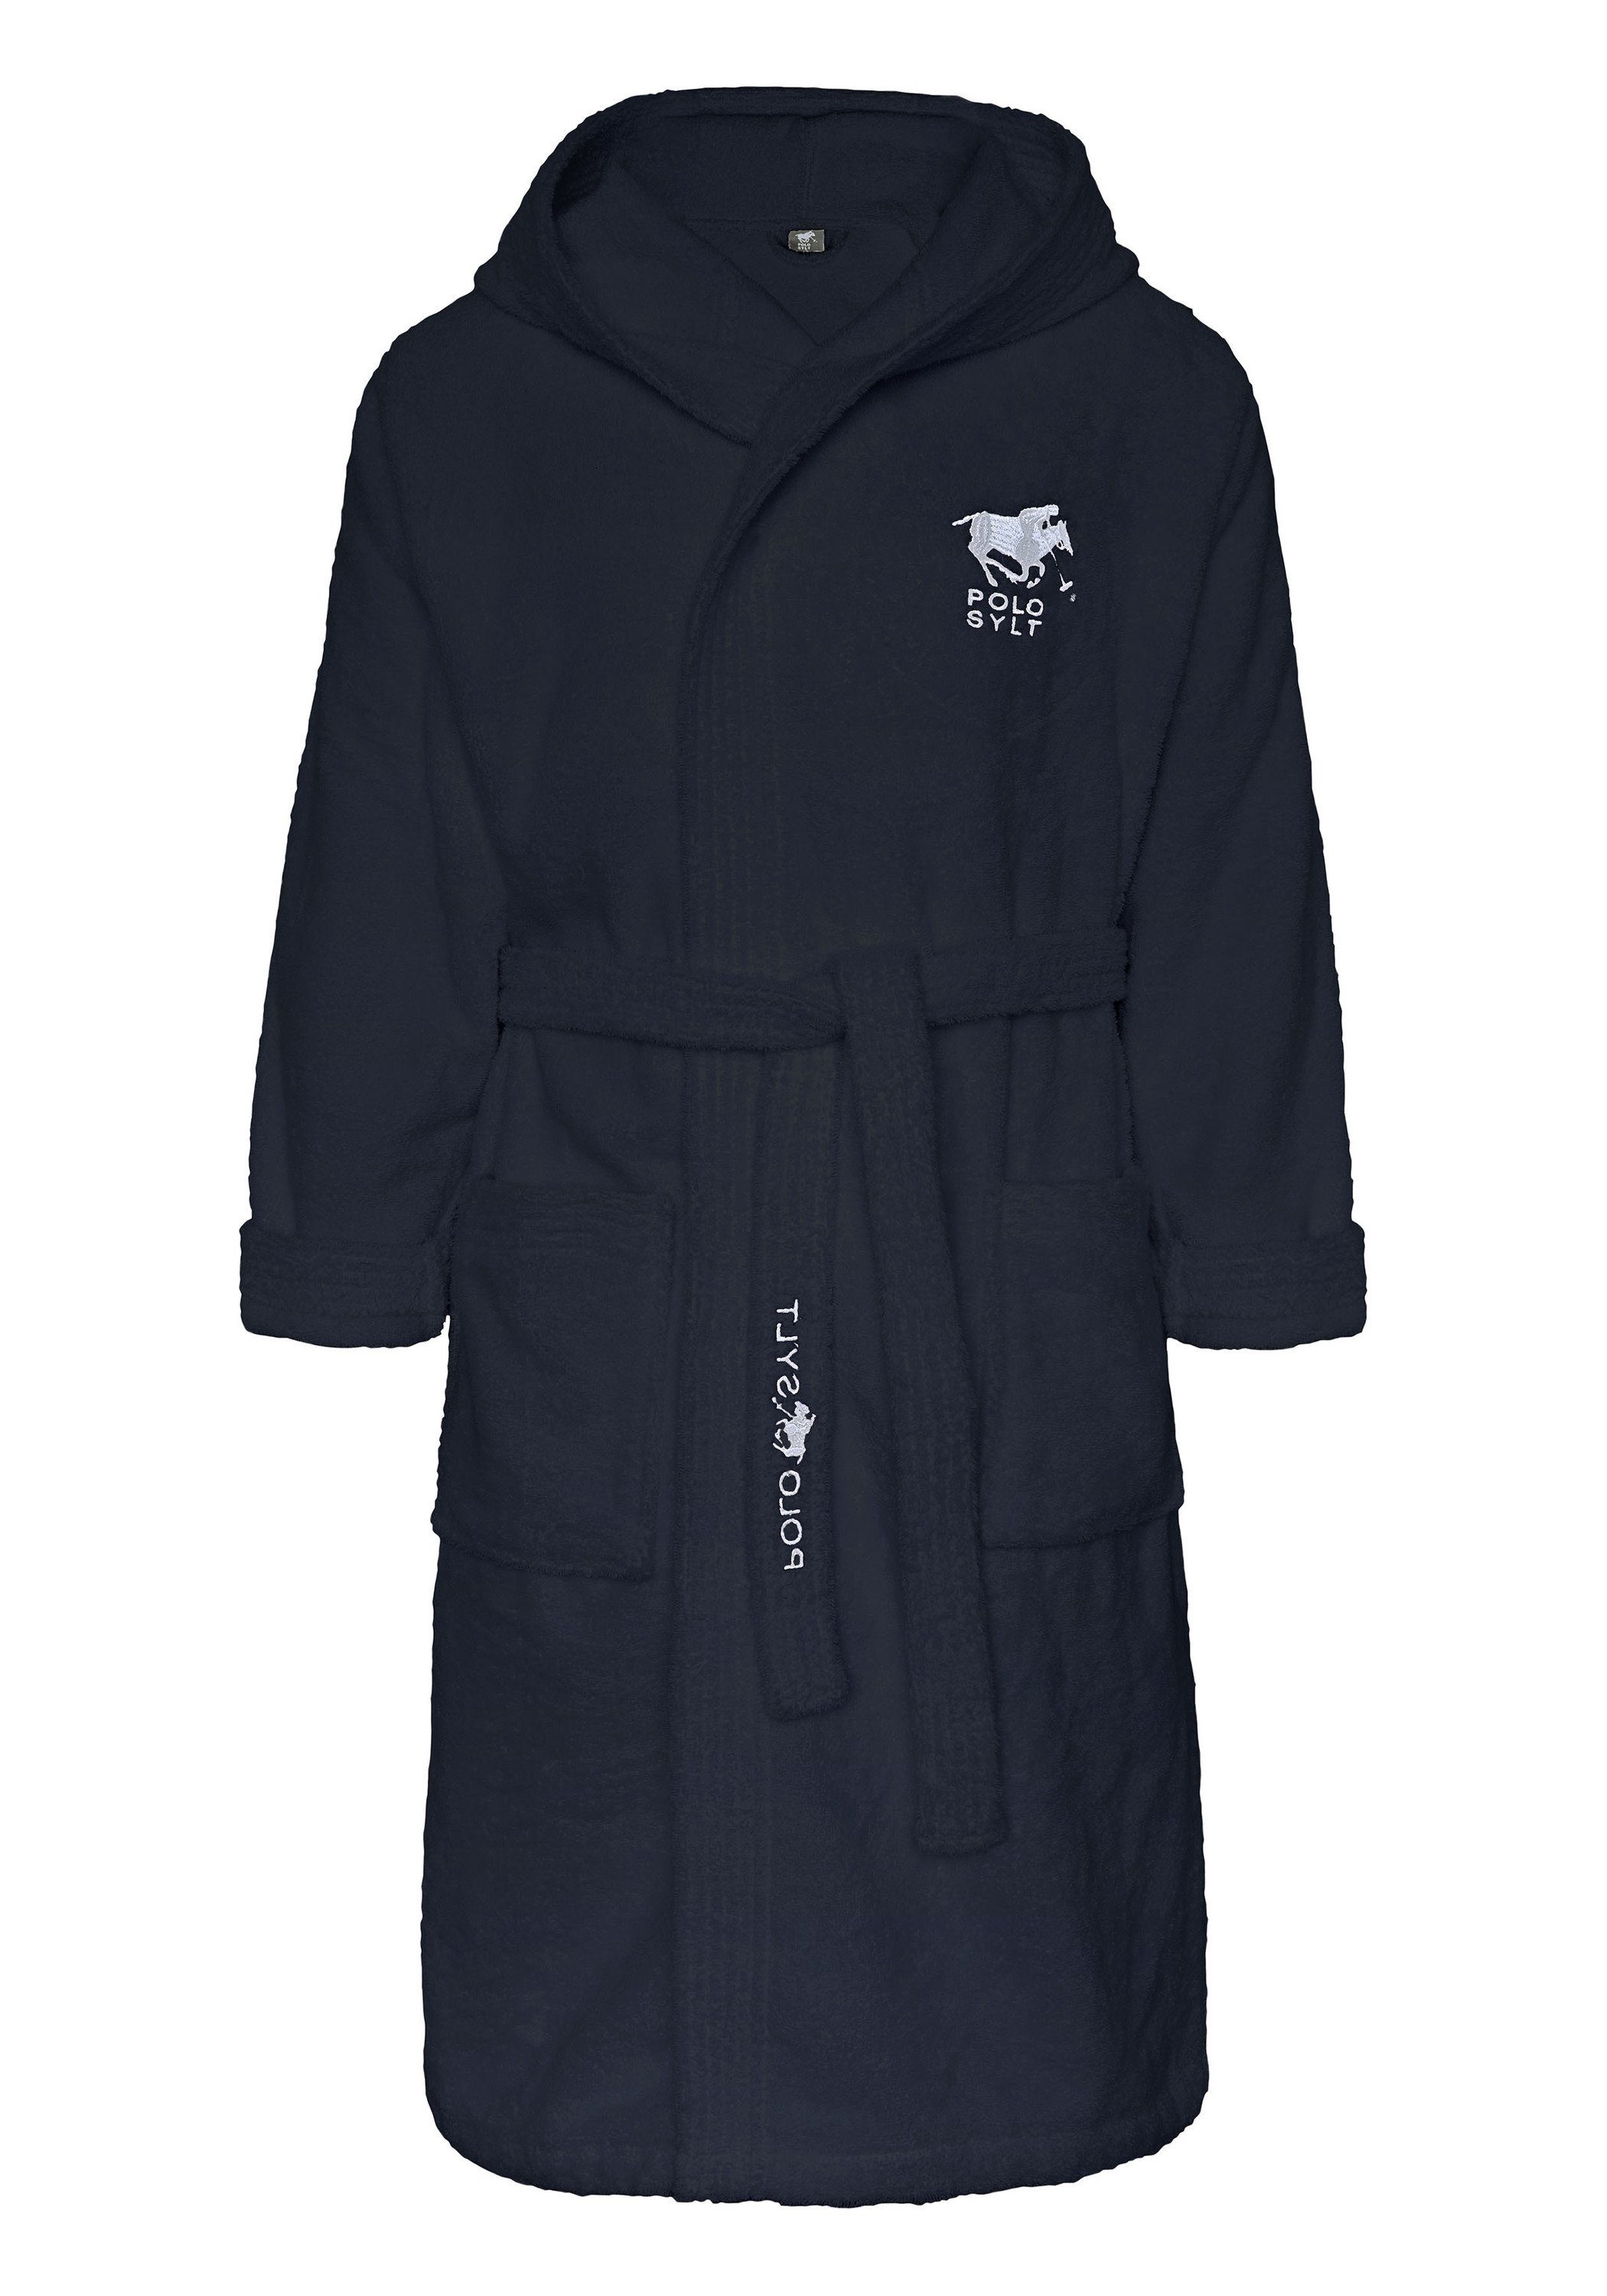 Polo Sylt Bademantel mit Logos, Gürtel und aufgesetzten Taschen, langform, Baumwolle, Gürtel dunkelblau